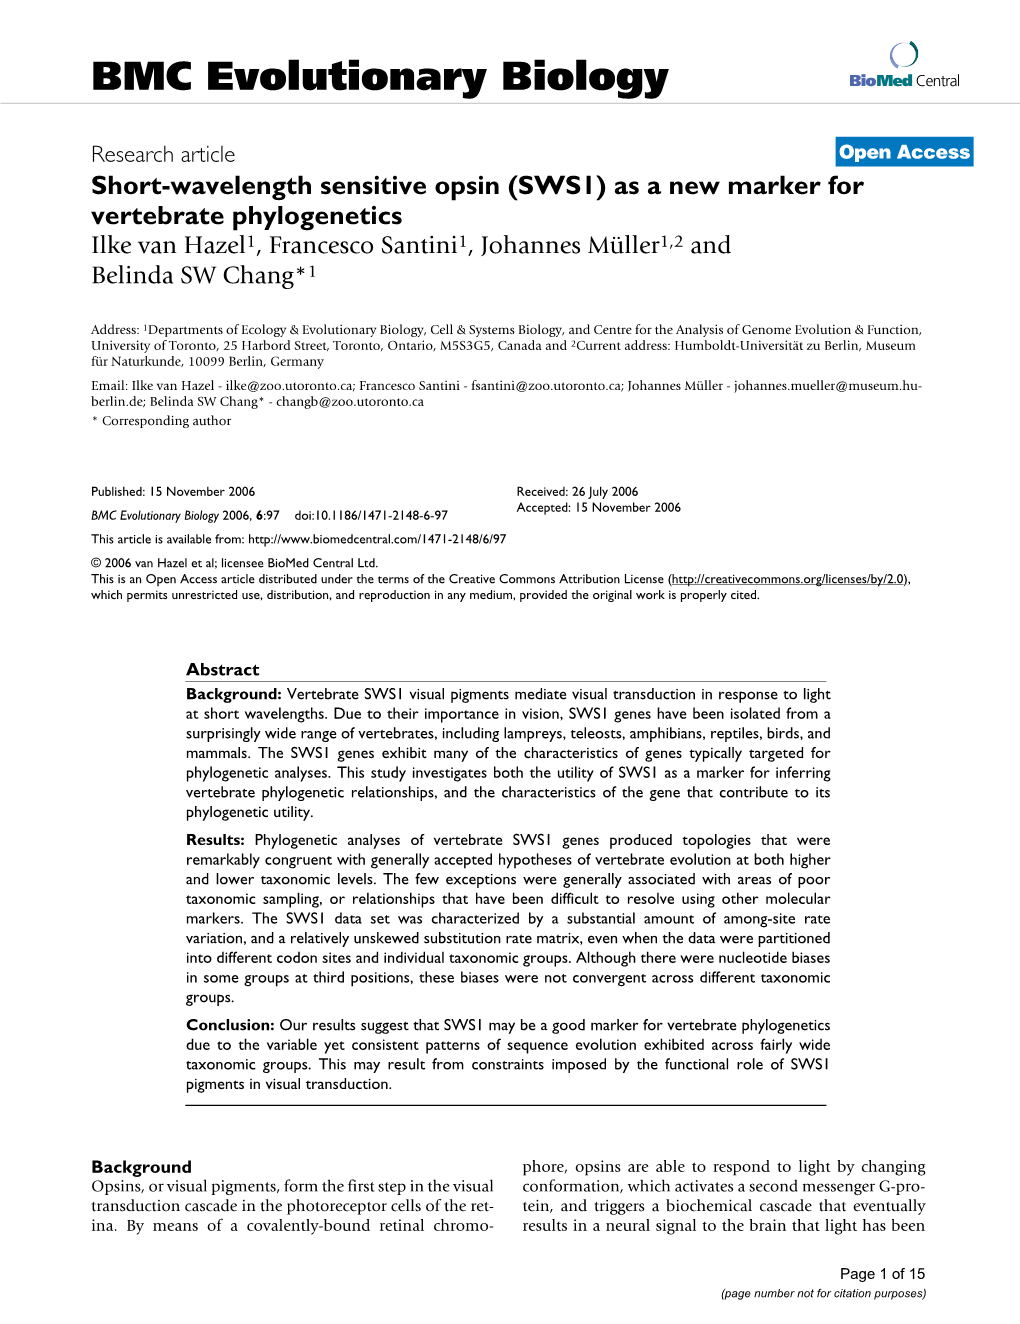 Short-Wavelength Sensitive Opsin (SWS1) As a New Marker for Vertebrate Phylogenetics Ilke Van Hazel1, Francesco Santini1, Johannes Müller1,2 and Belinda SW Chang*1